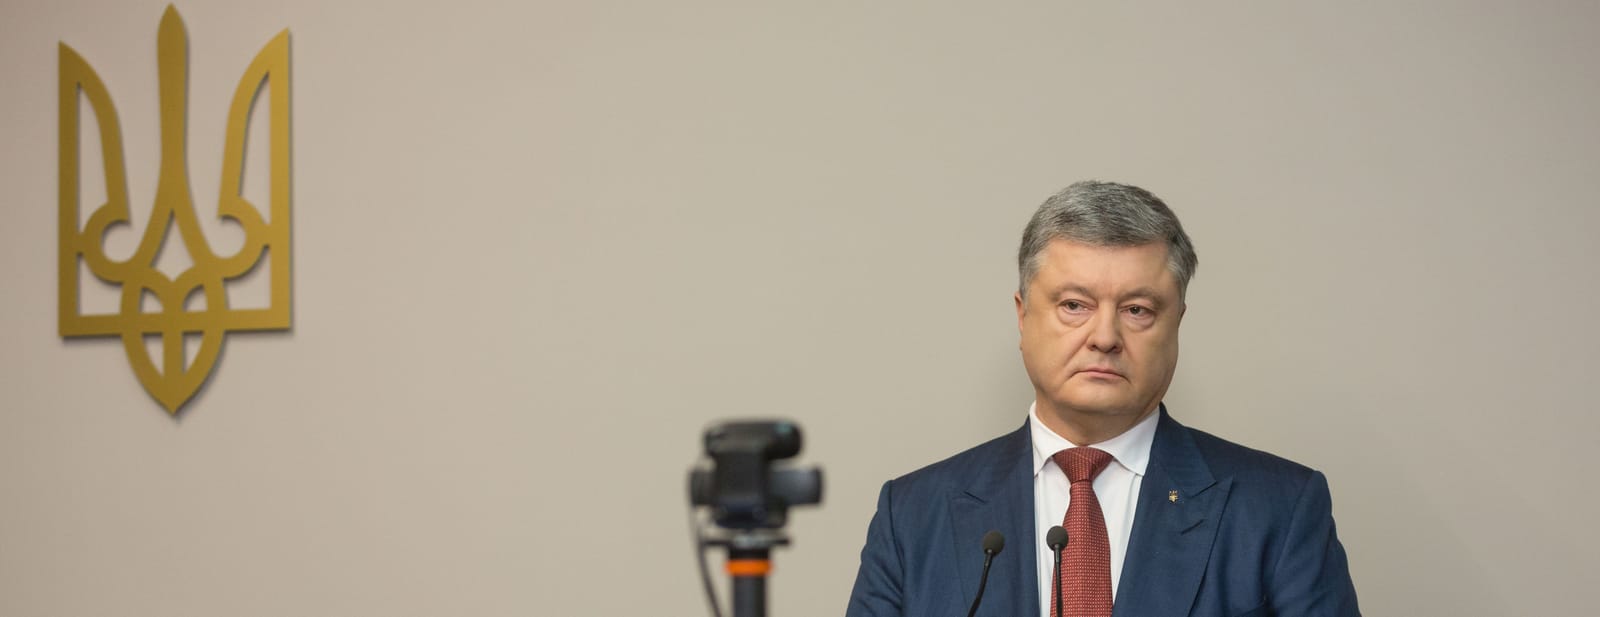 Свидетель №1. Как Порошенко допрашивали в суде о госизмене Януковича